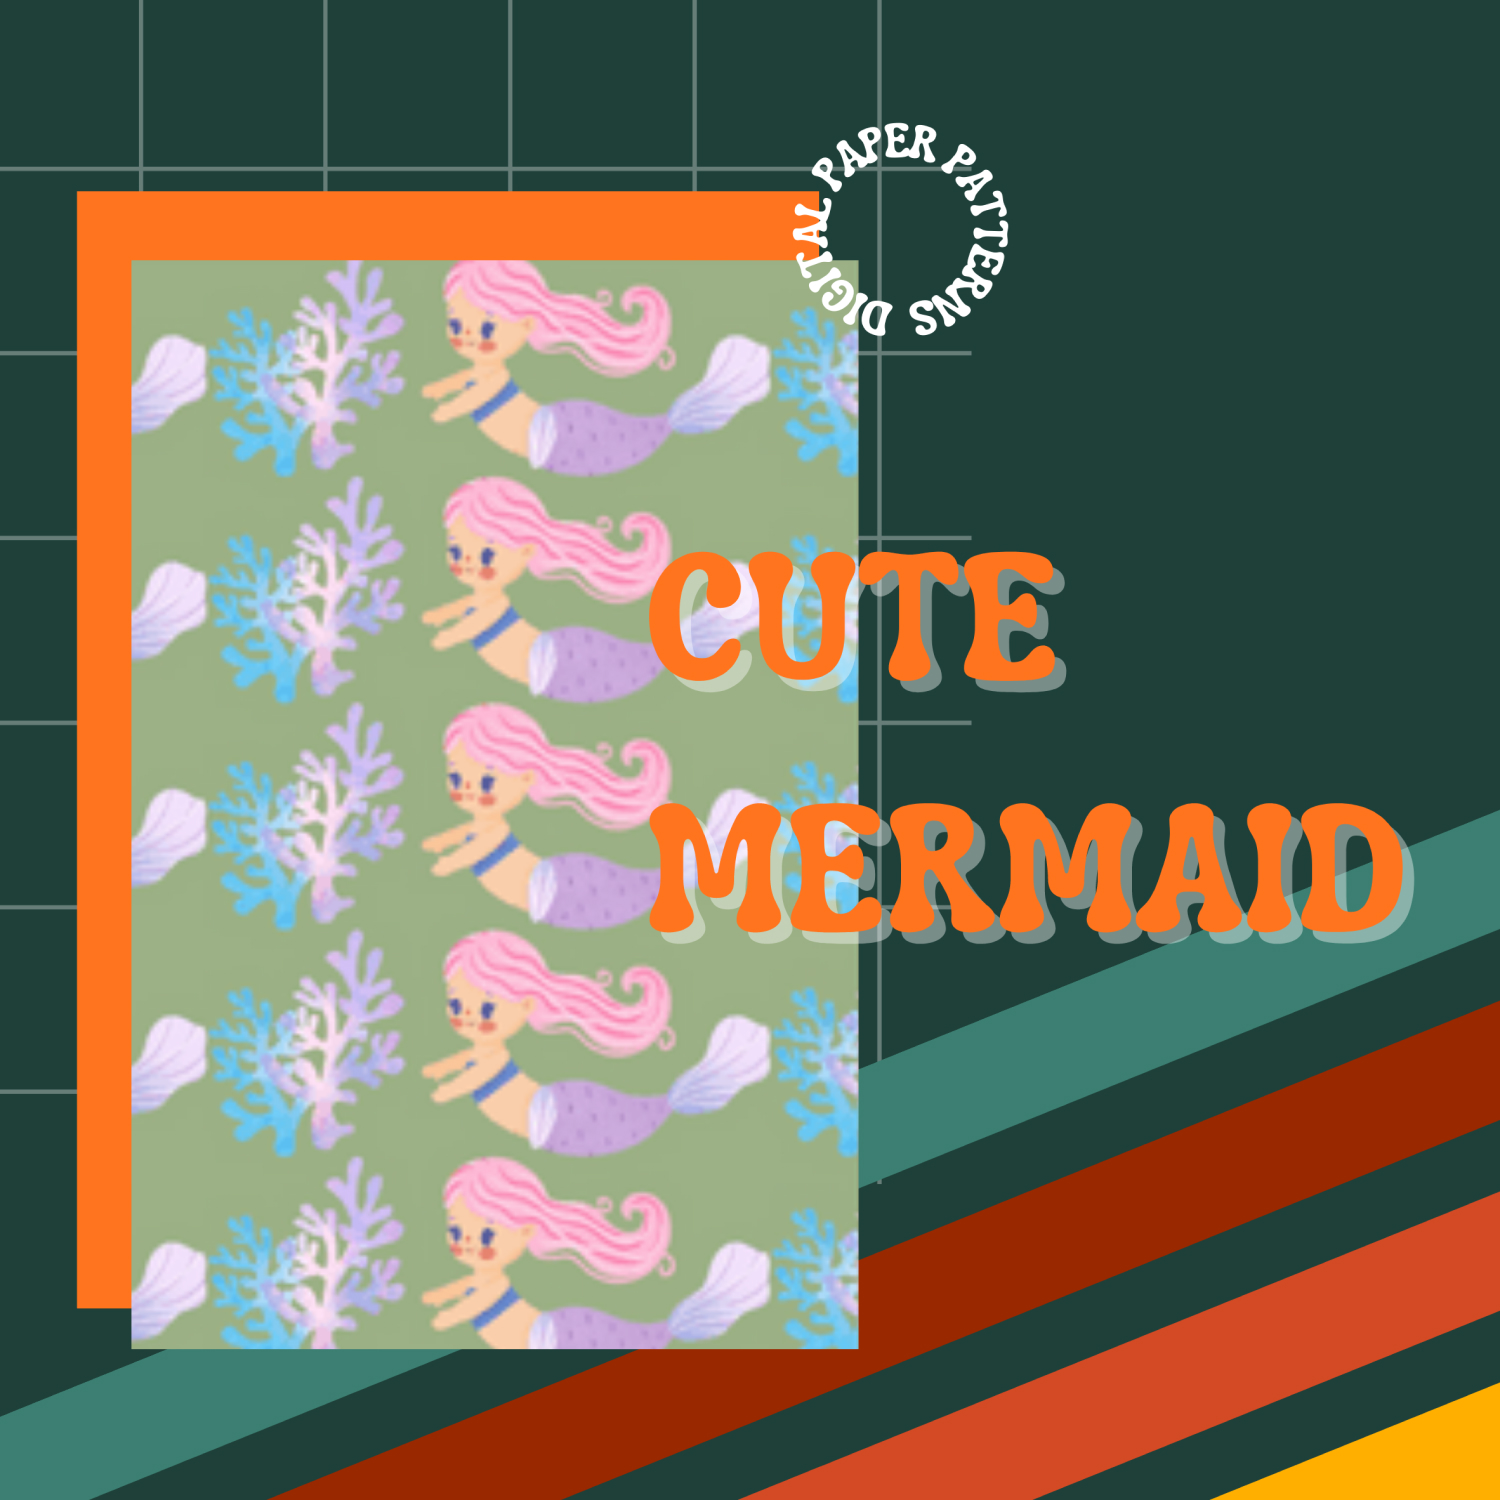 12 Cute Mermaid Digital Paper Patterns.